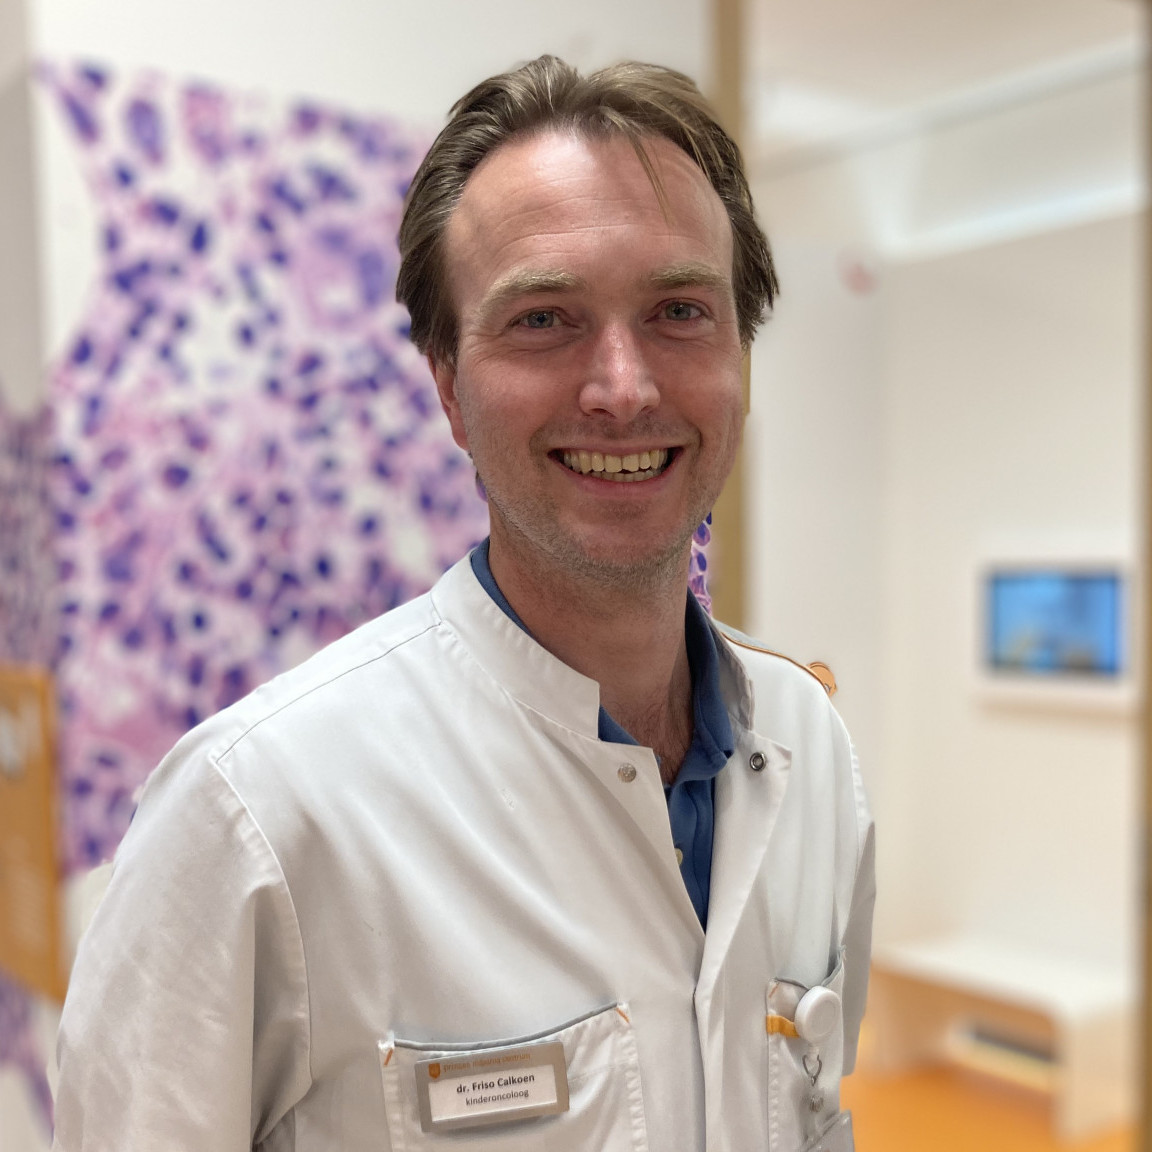 Friso Calkoen ‘Immunotherapie CAR-T: van nieuwkomer naar behandeling van de toekomst’